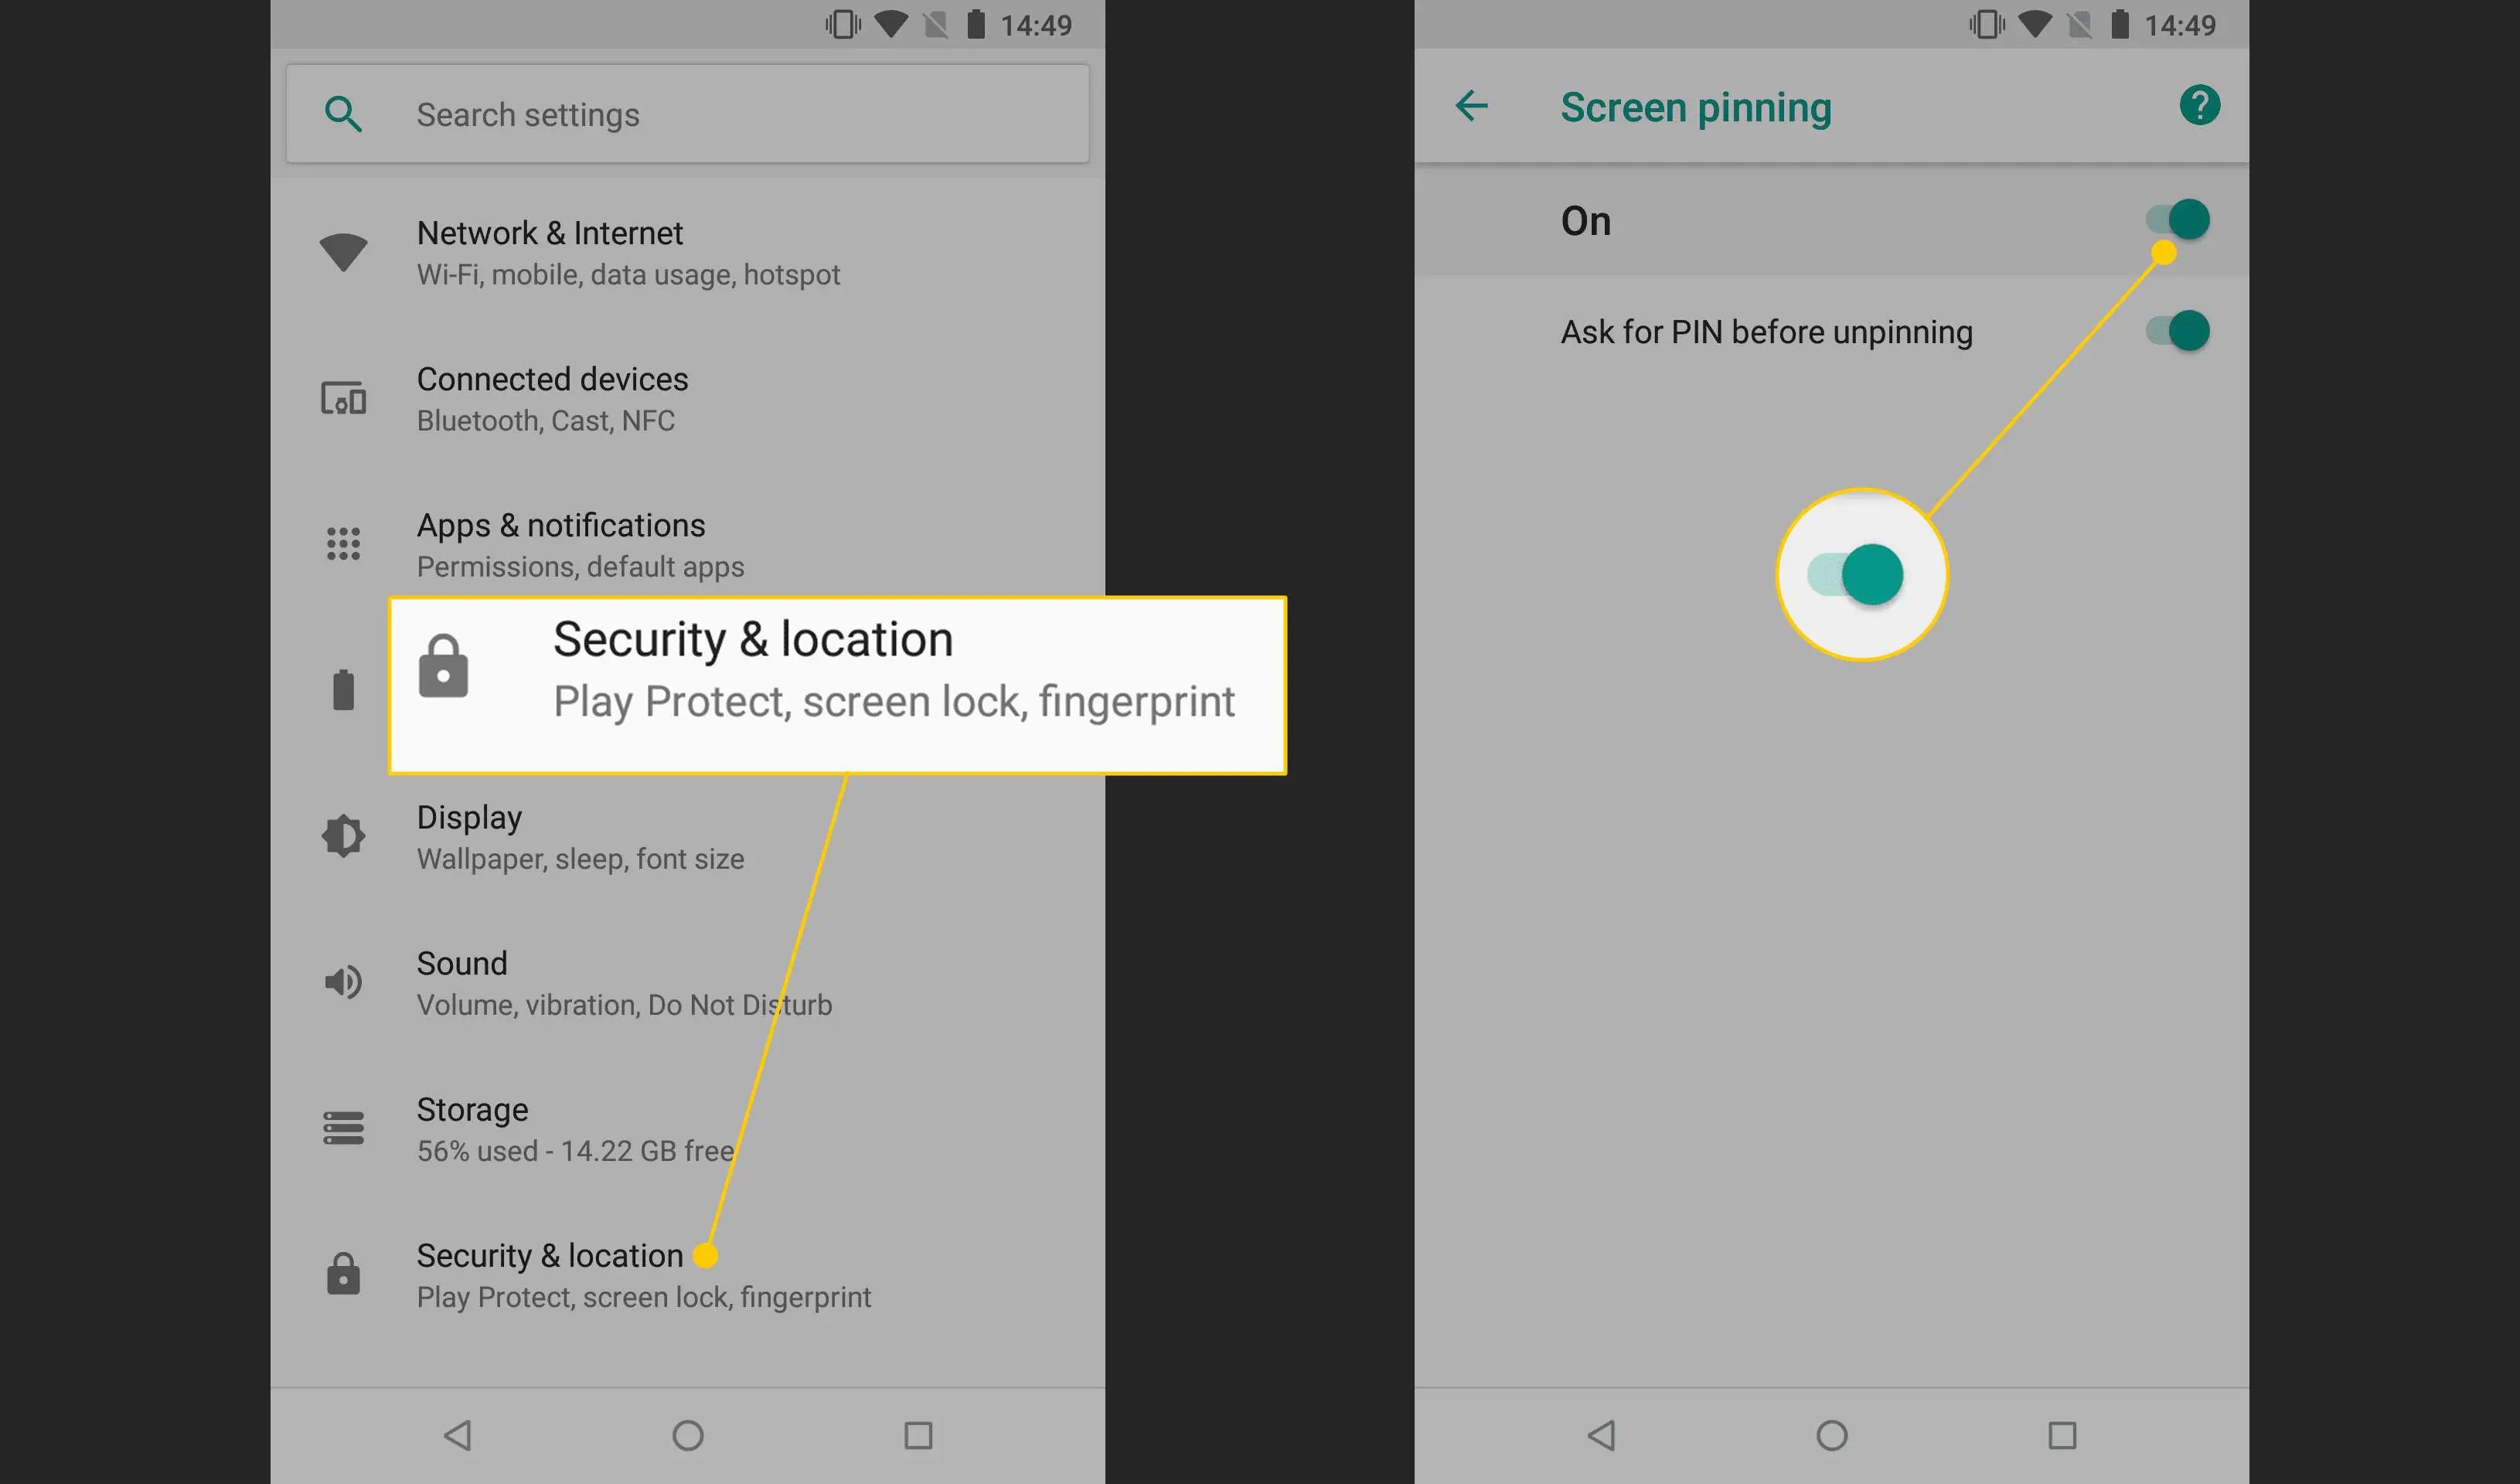 Segurança e localização, botão de fixação de tela no Android